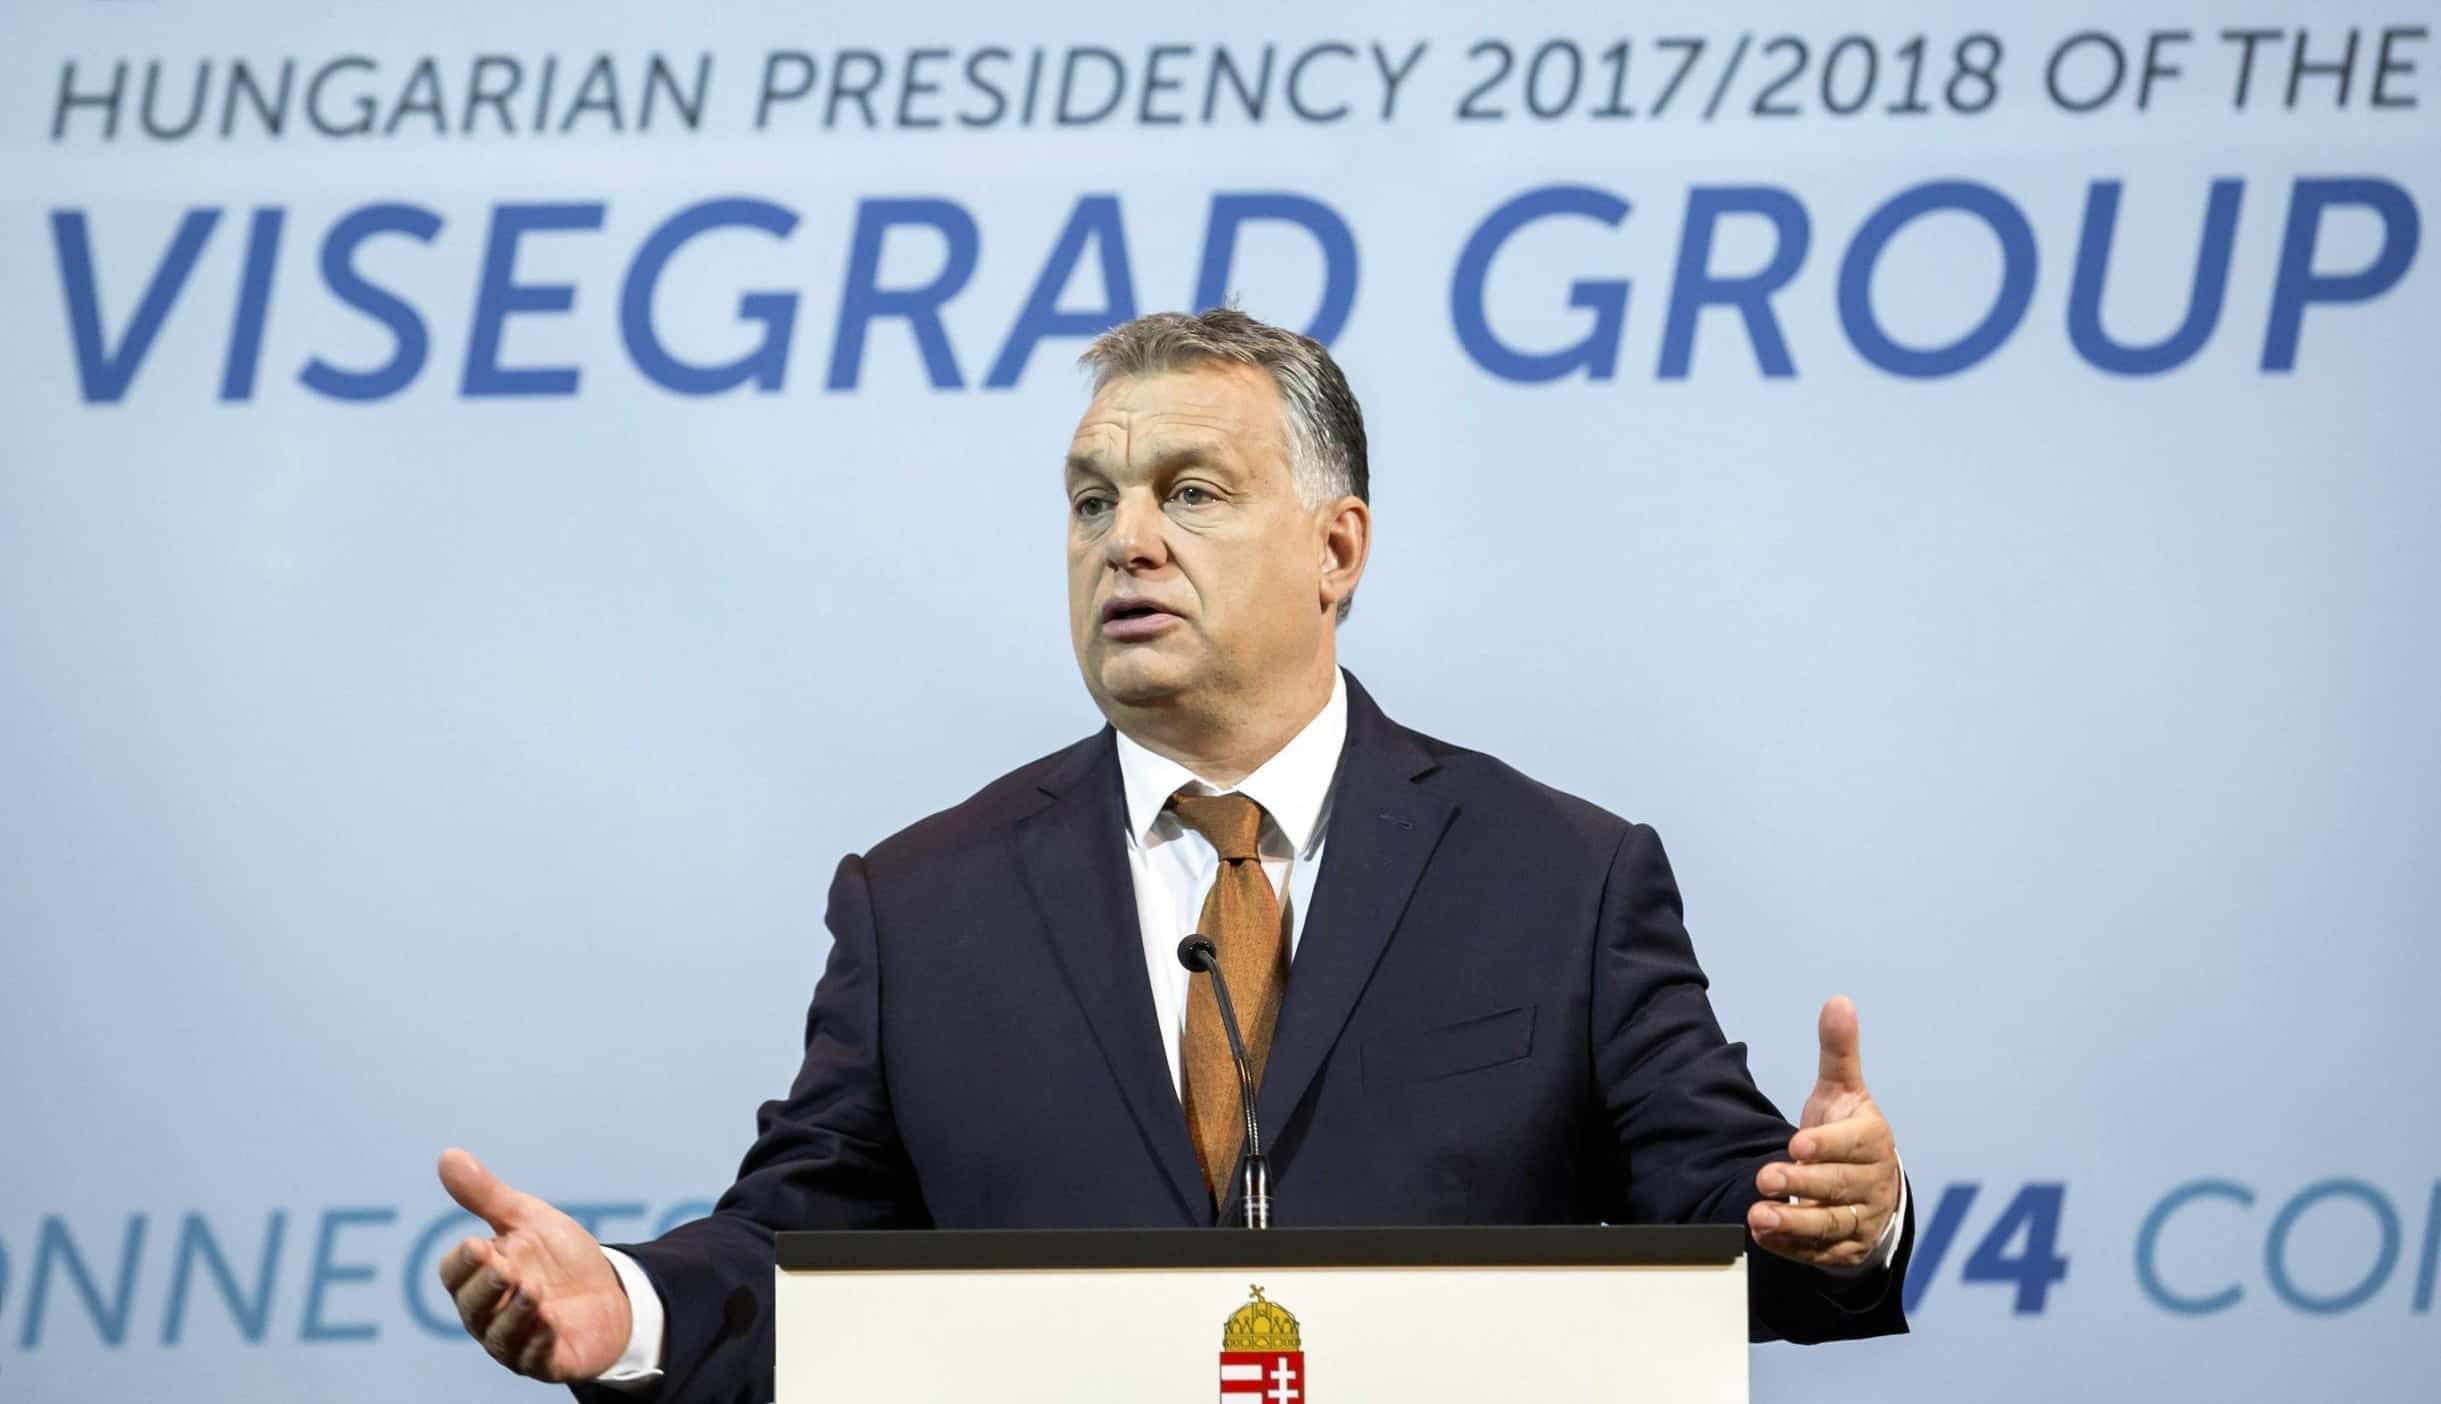 Viktor ORbán